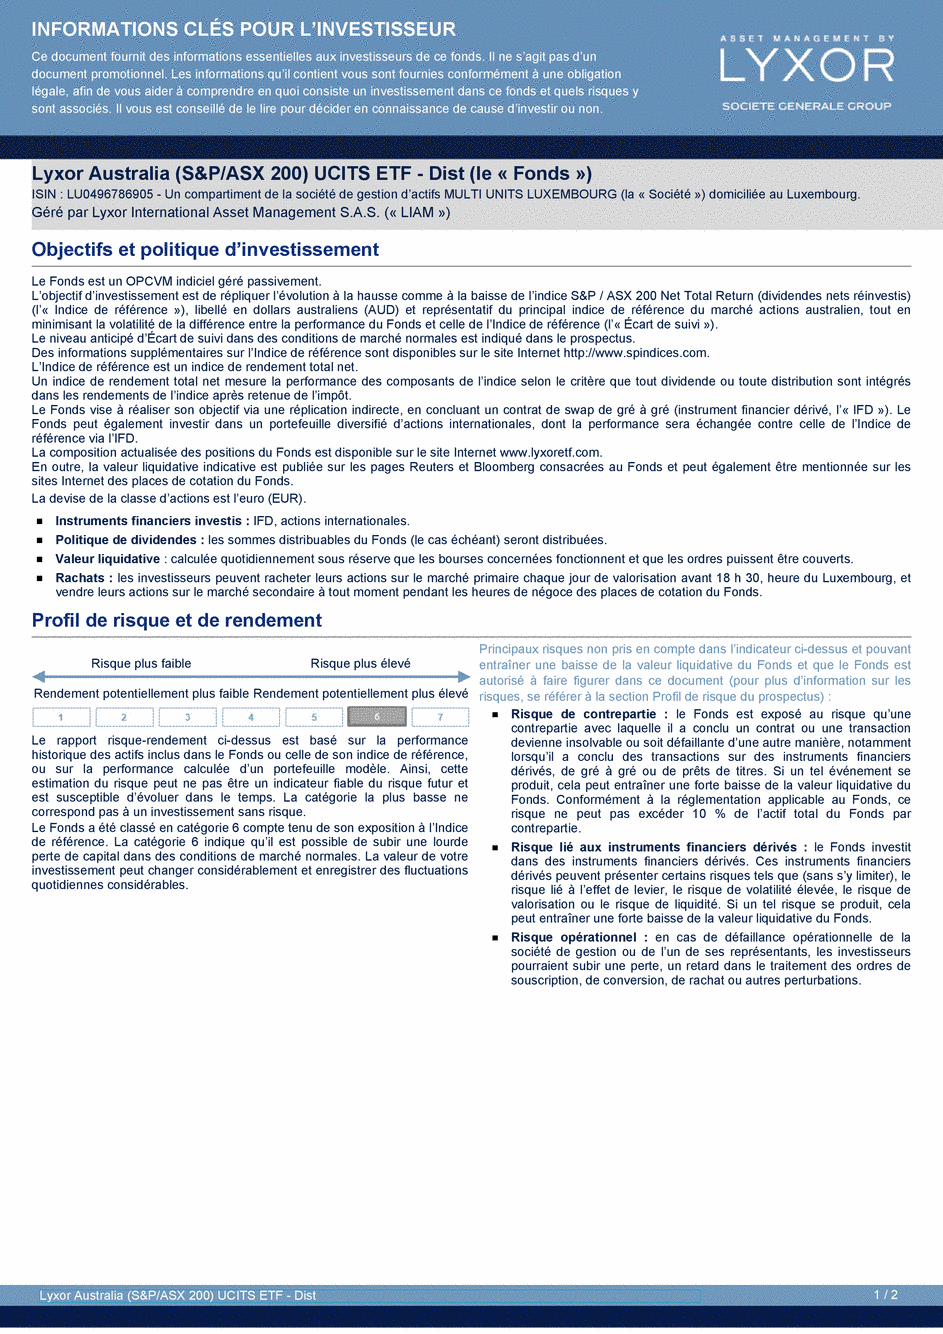 DICI Lyxor Australia (S&P/ASX 200) UCITS ETF - Dist - 19/02/2021 - Français